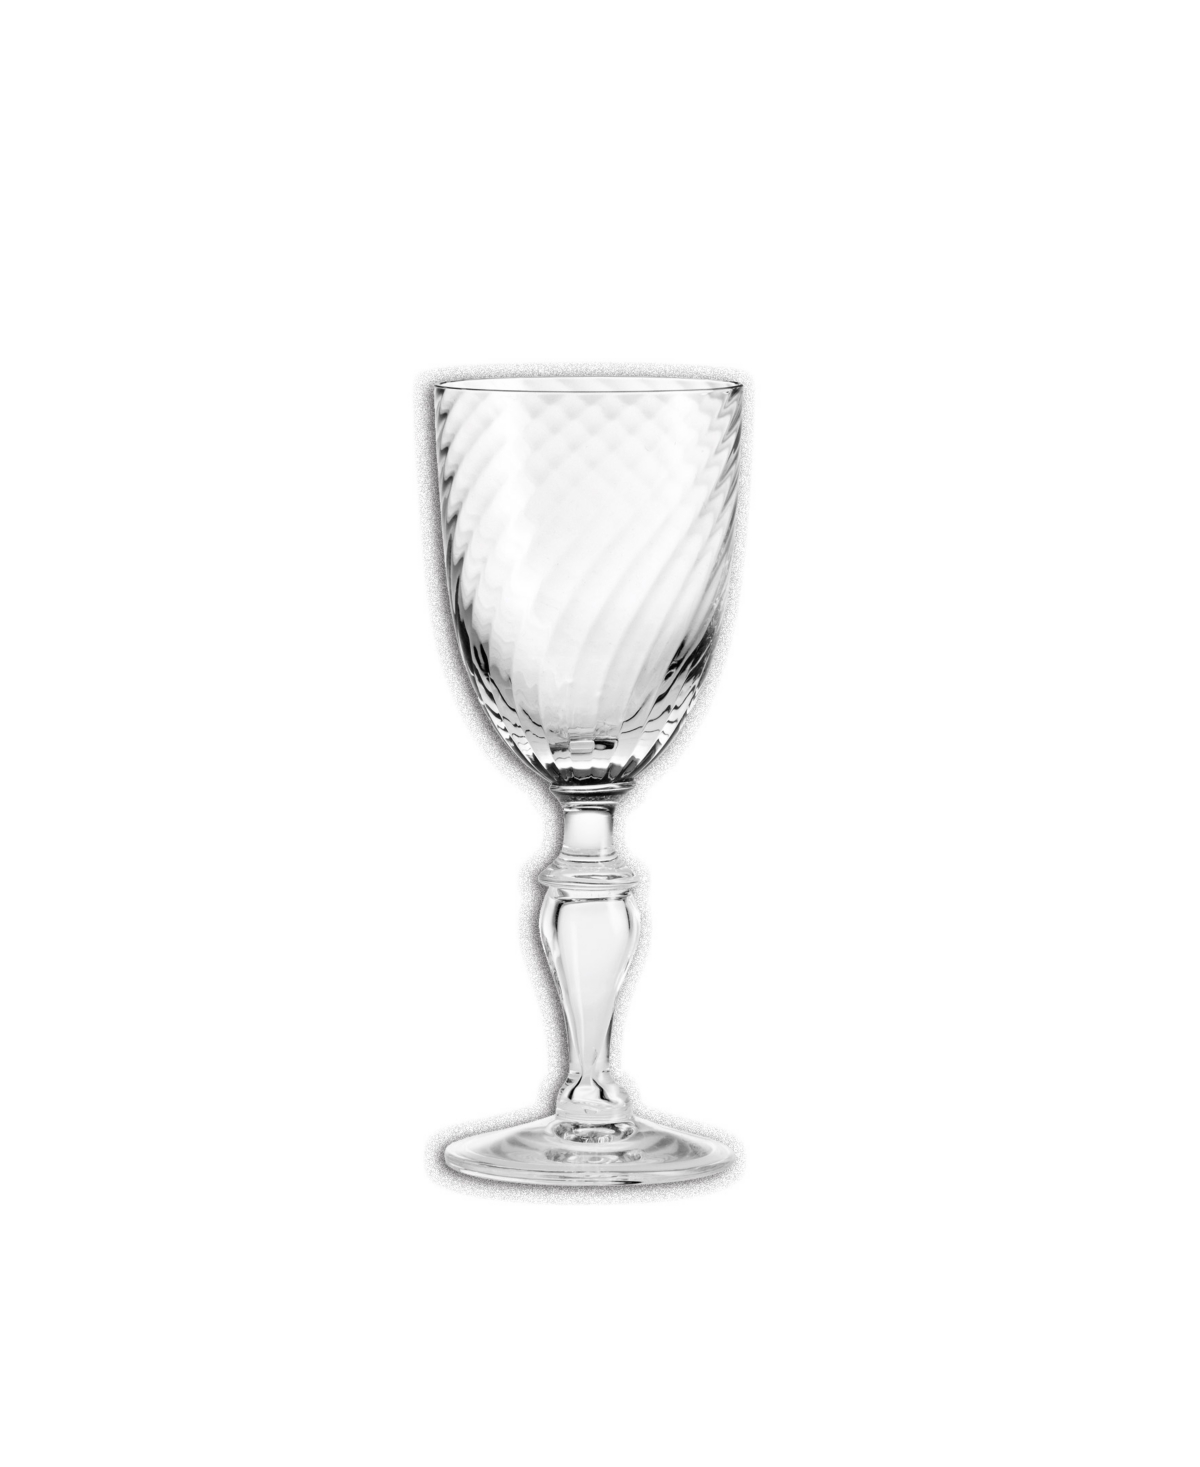 Rosendahl Regina Dessert Wine Glass, 3.4 oz In Clear